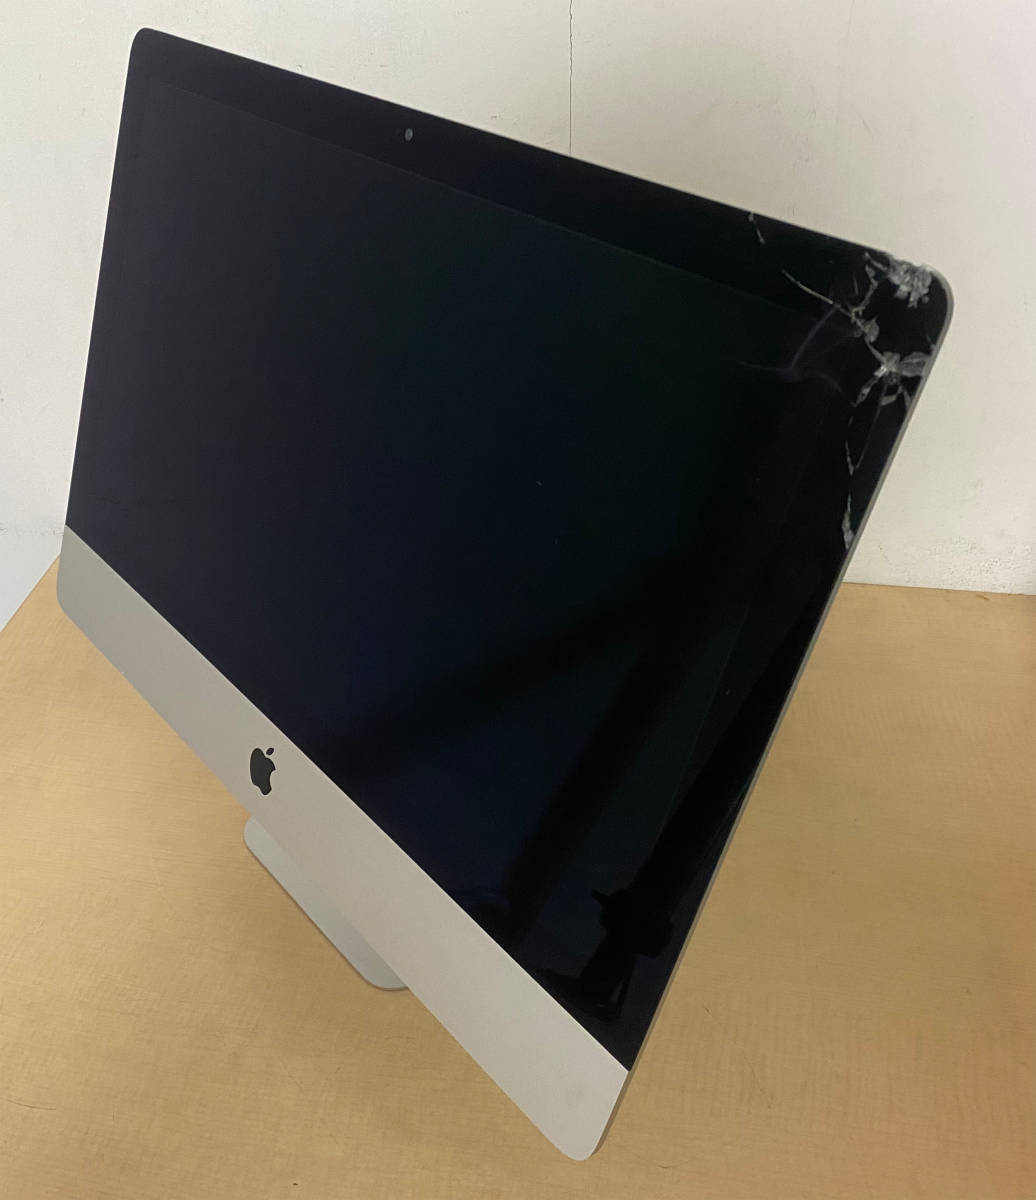 【58】★ジャンク品★Apple iMac 21.5-inch,2017 Core i5 2.3GHz/16GB/HDD1TB/macOS Monterey_液晶表民右上に割れあり。